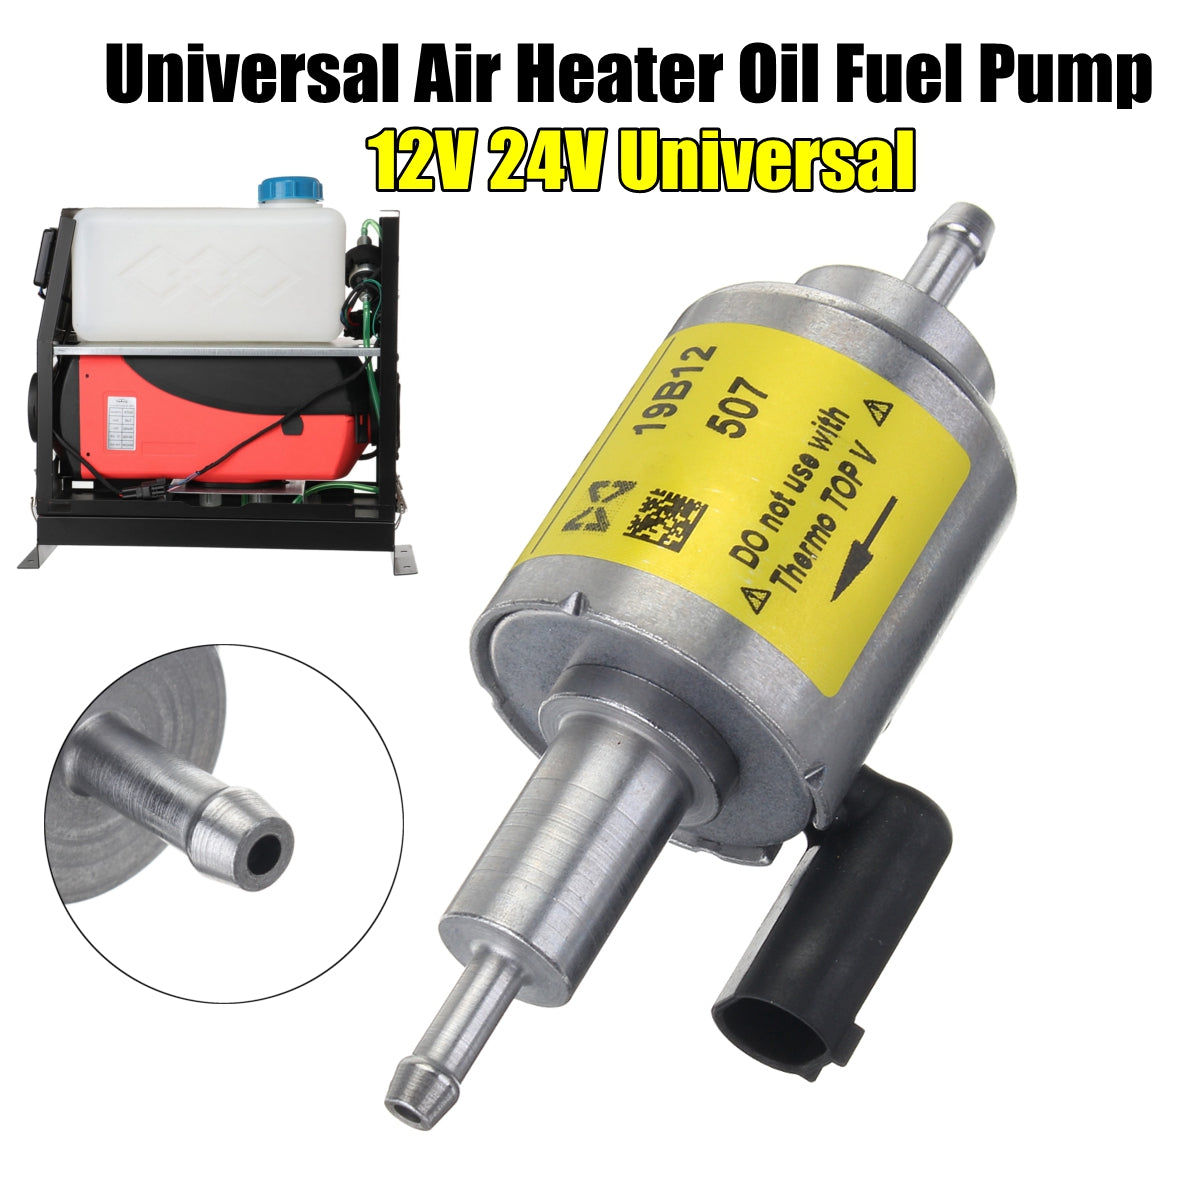 A65-Car-Air-Heater-Oil-Fuel-Pump-features